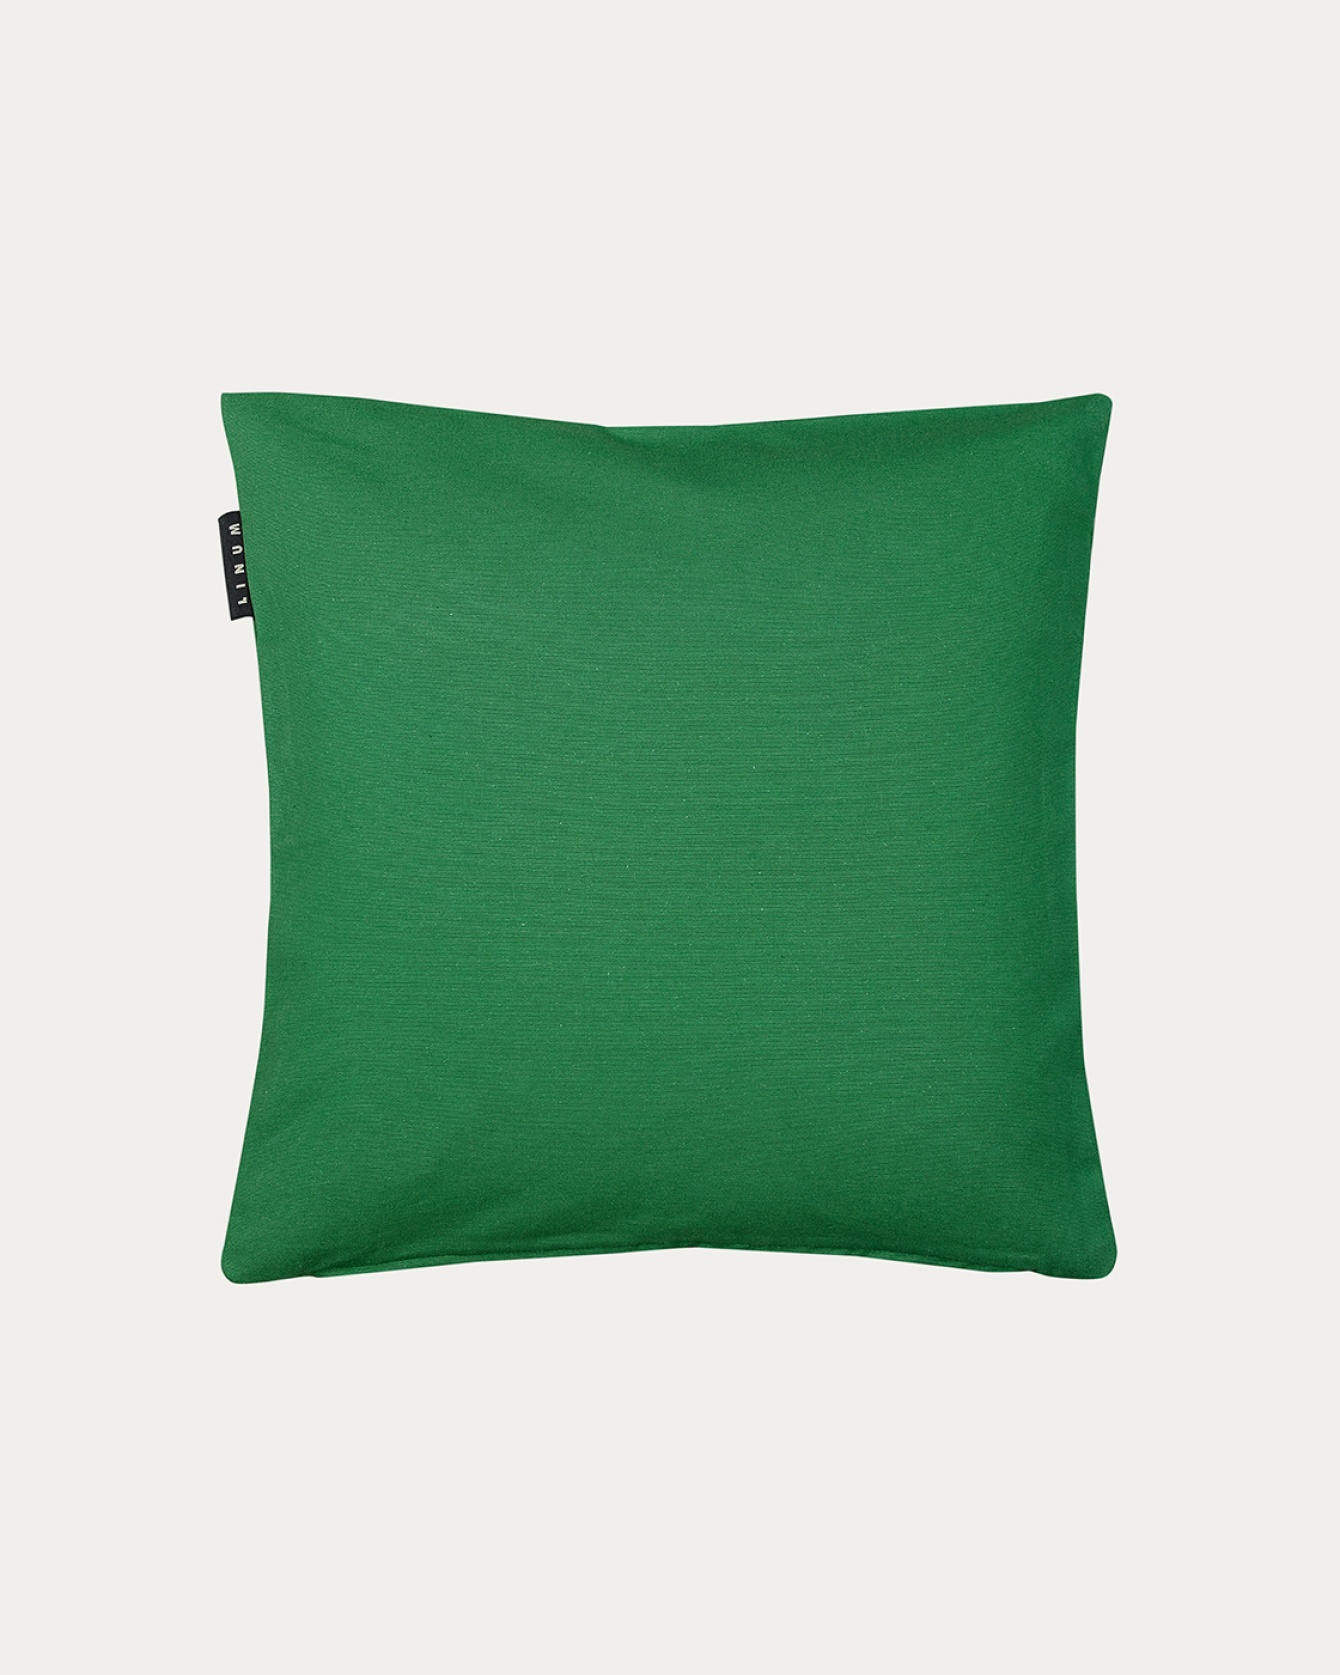 Produktbild ängsgrön ANNABELL kuddfodral av mjuk bomull från LINUM DESIGN. Storlek 40x40 cm.